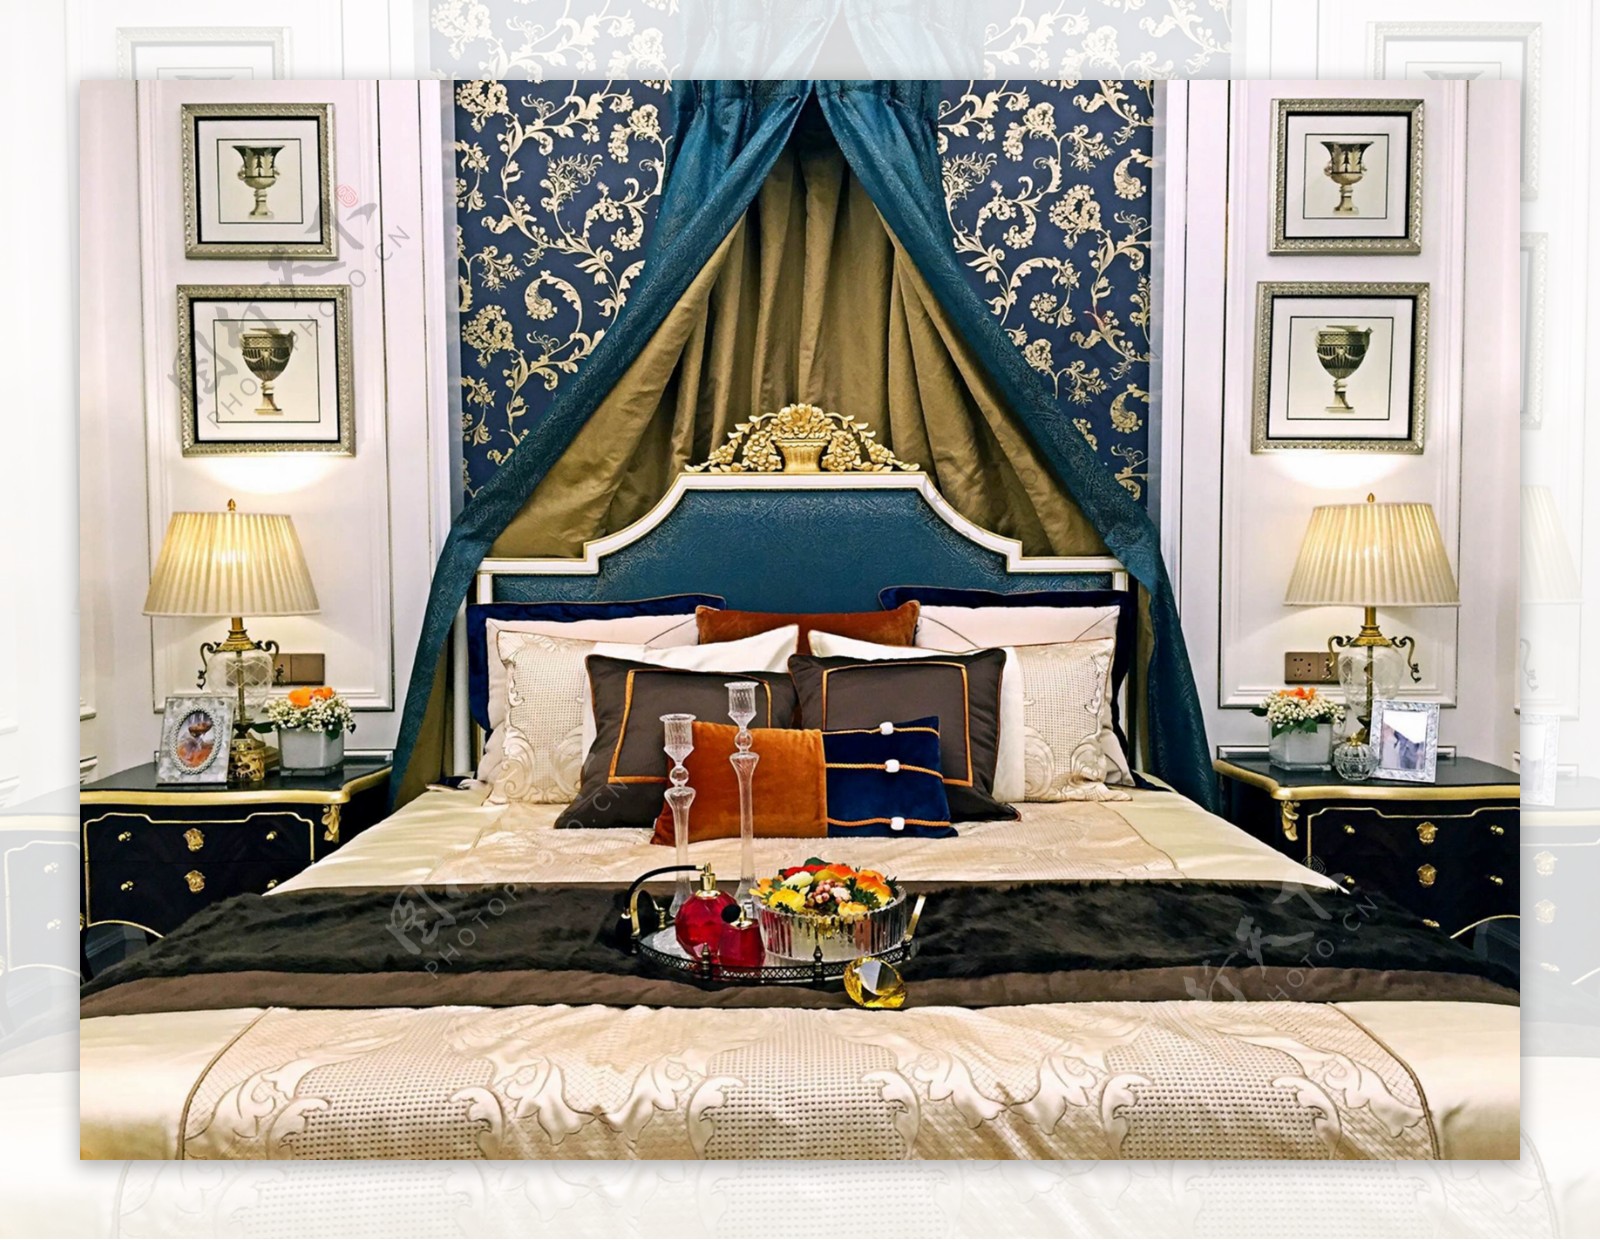 现代时尚卧室蓝色金丝花纹床头室内装修图